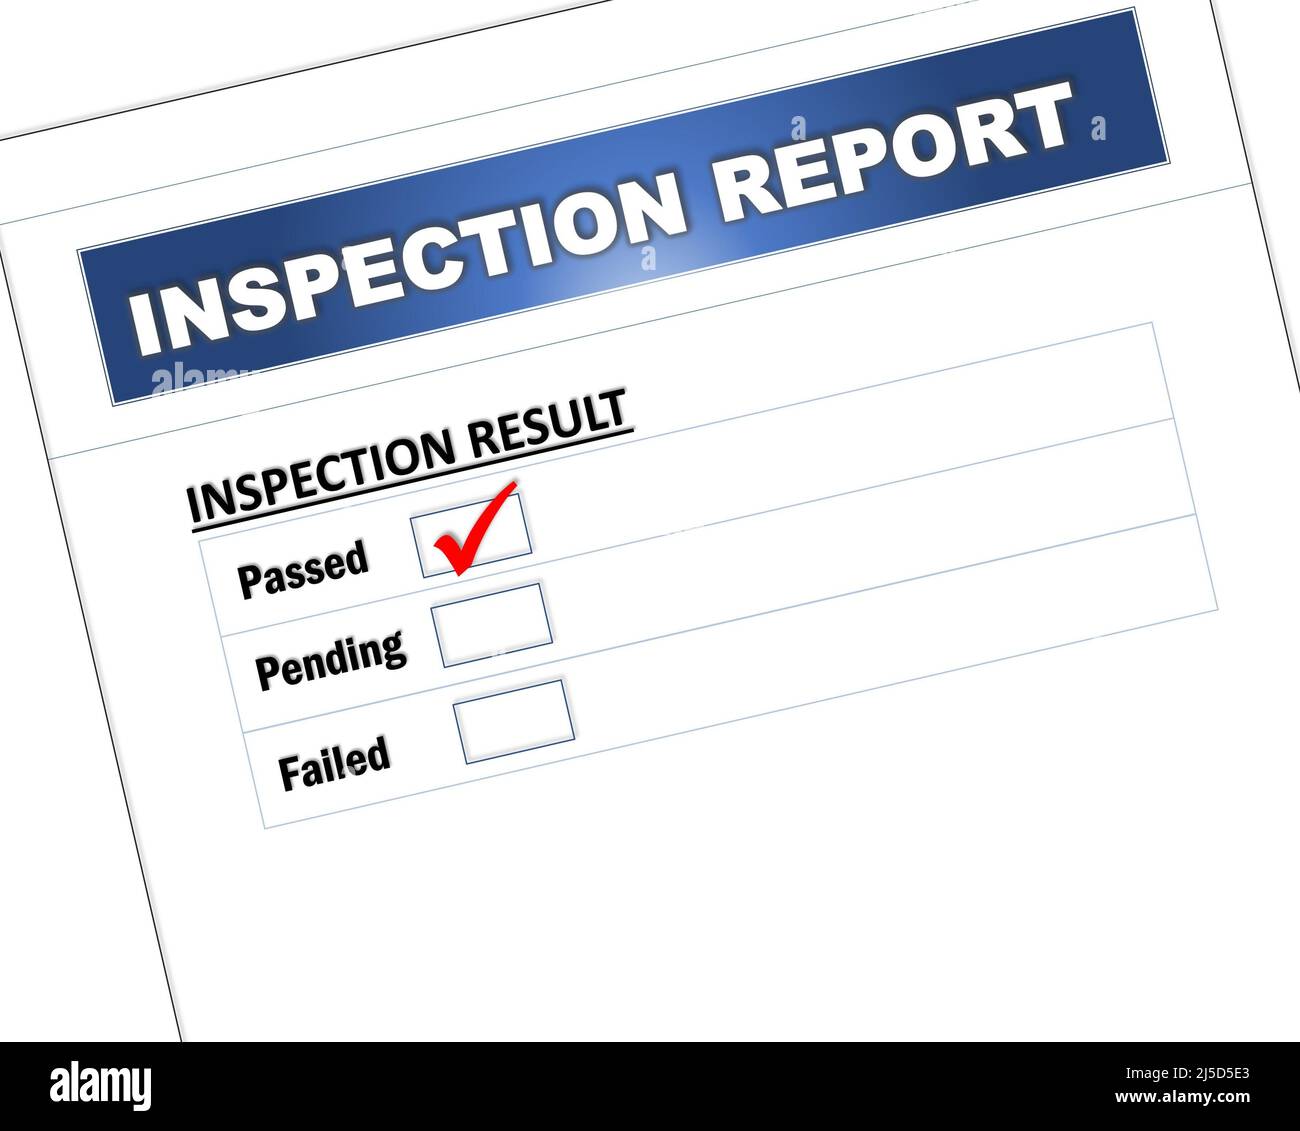 El formulario Informe de inspección contiene los resultados de las casillas de verificación aprobados, pendientes y fallidos que utiliza el personal de auditoría. Concepto de auditoría y negocio. Foto de stock